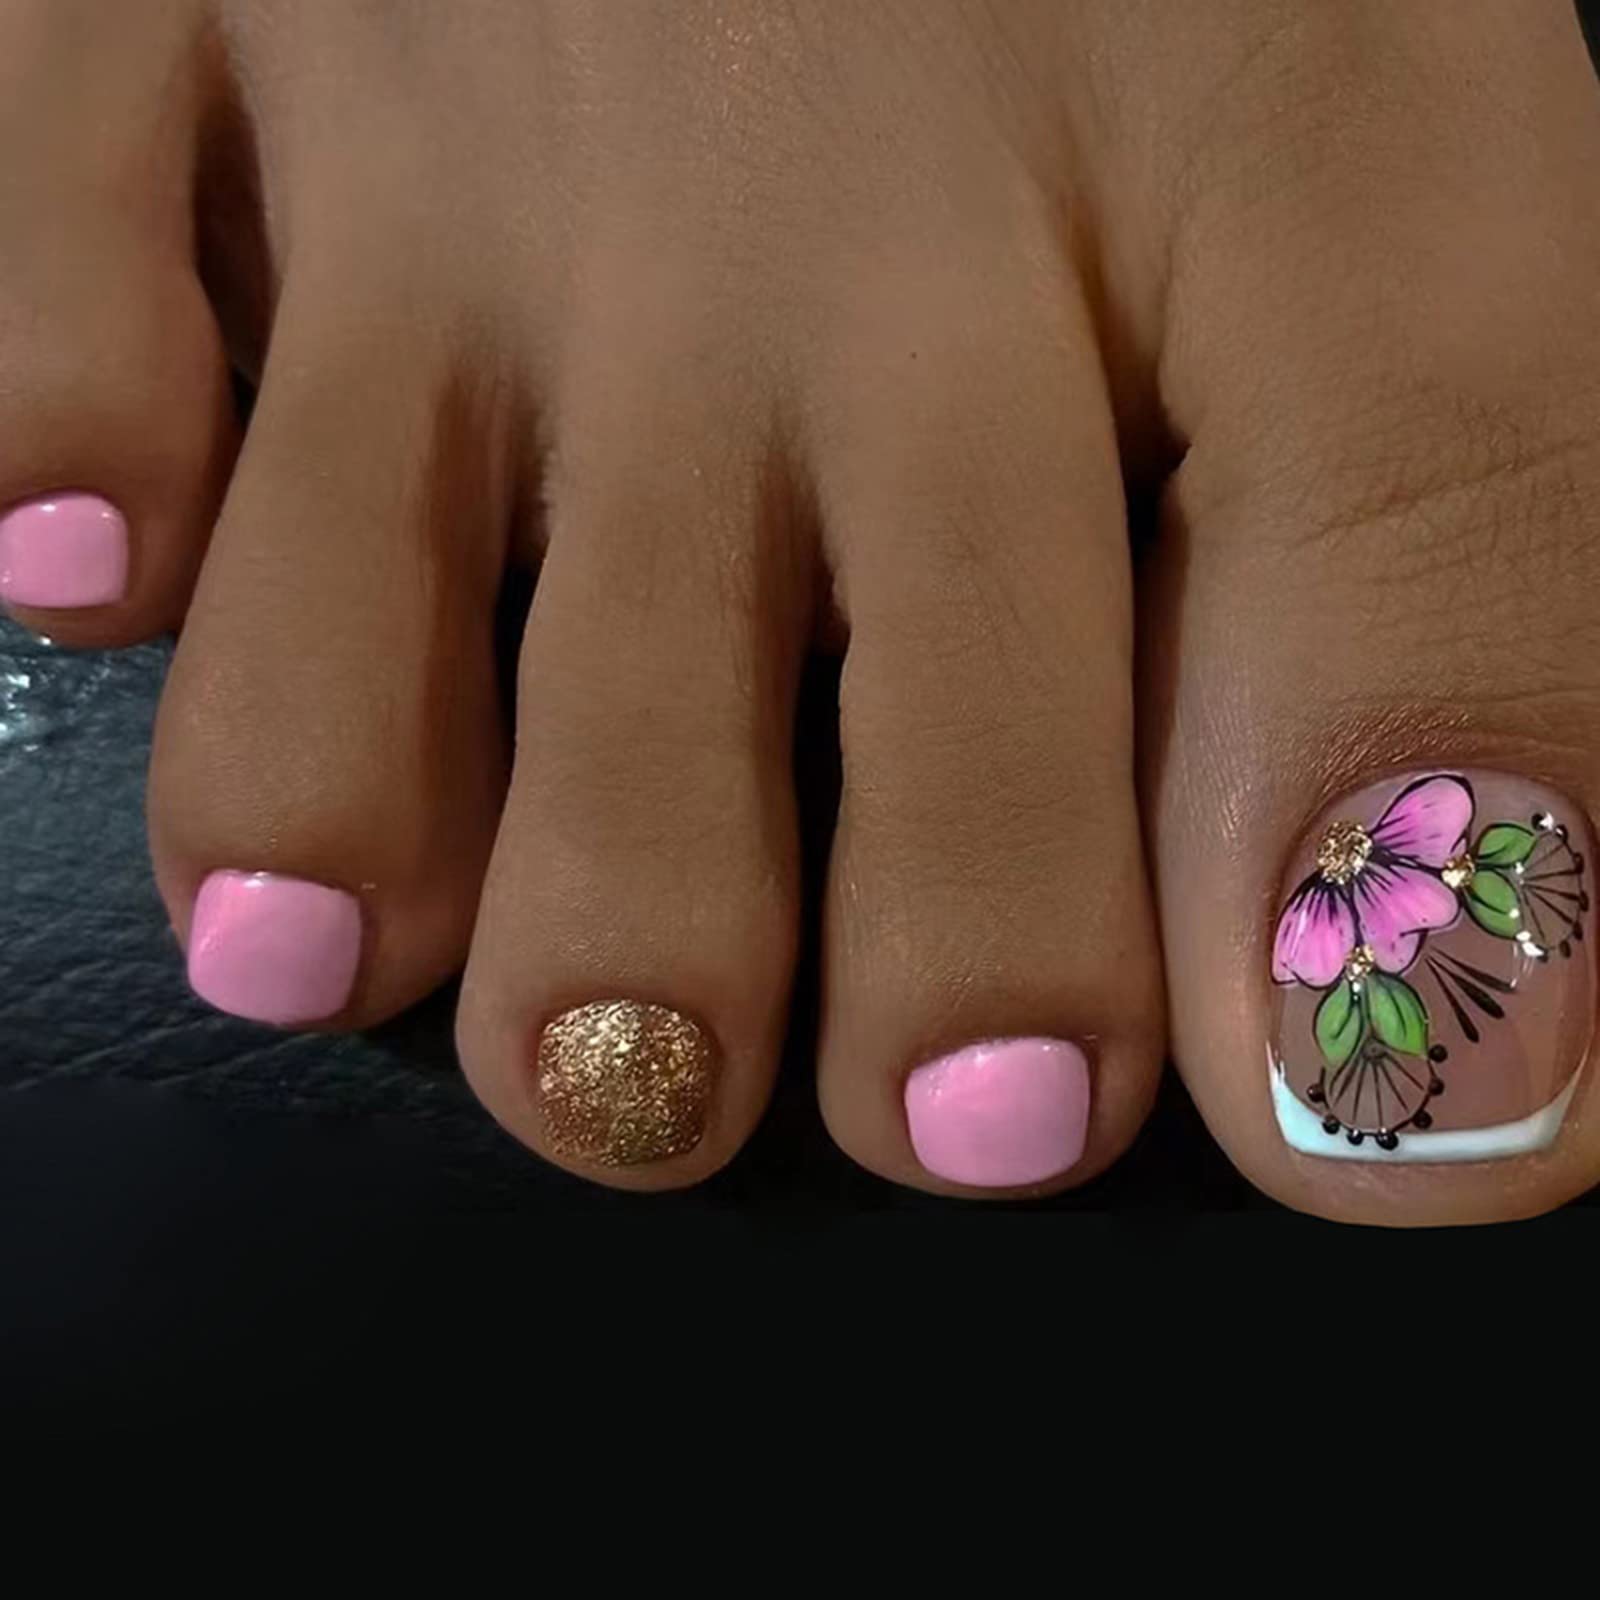 Buy Pink Toe Nails Press on 24pcs Fake Full Cover Toe Nails False Nails  With Glue Press on Toenails Nail Design Reusable Bridal Acrilic Nail Online  in India - Etsy